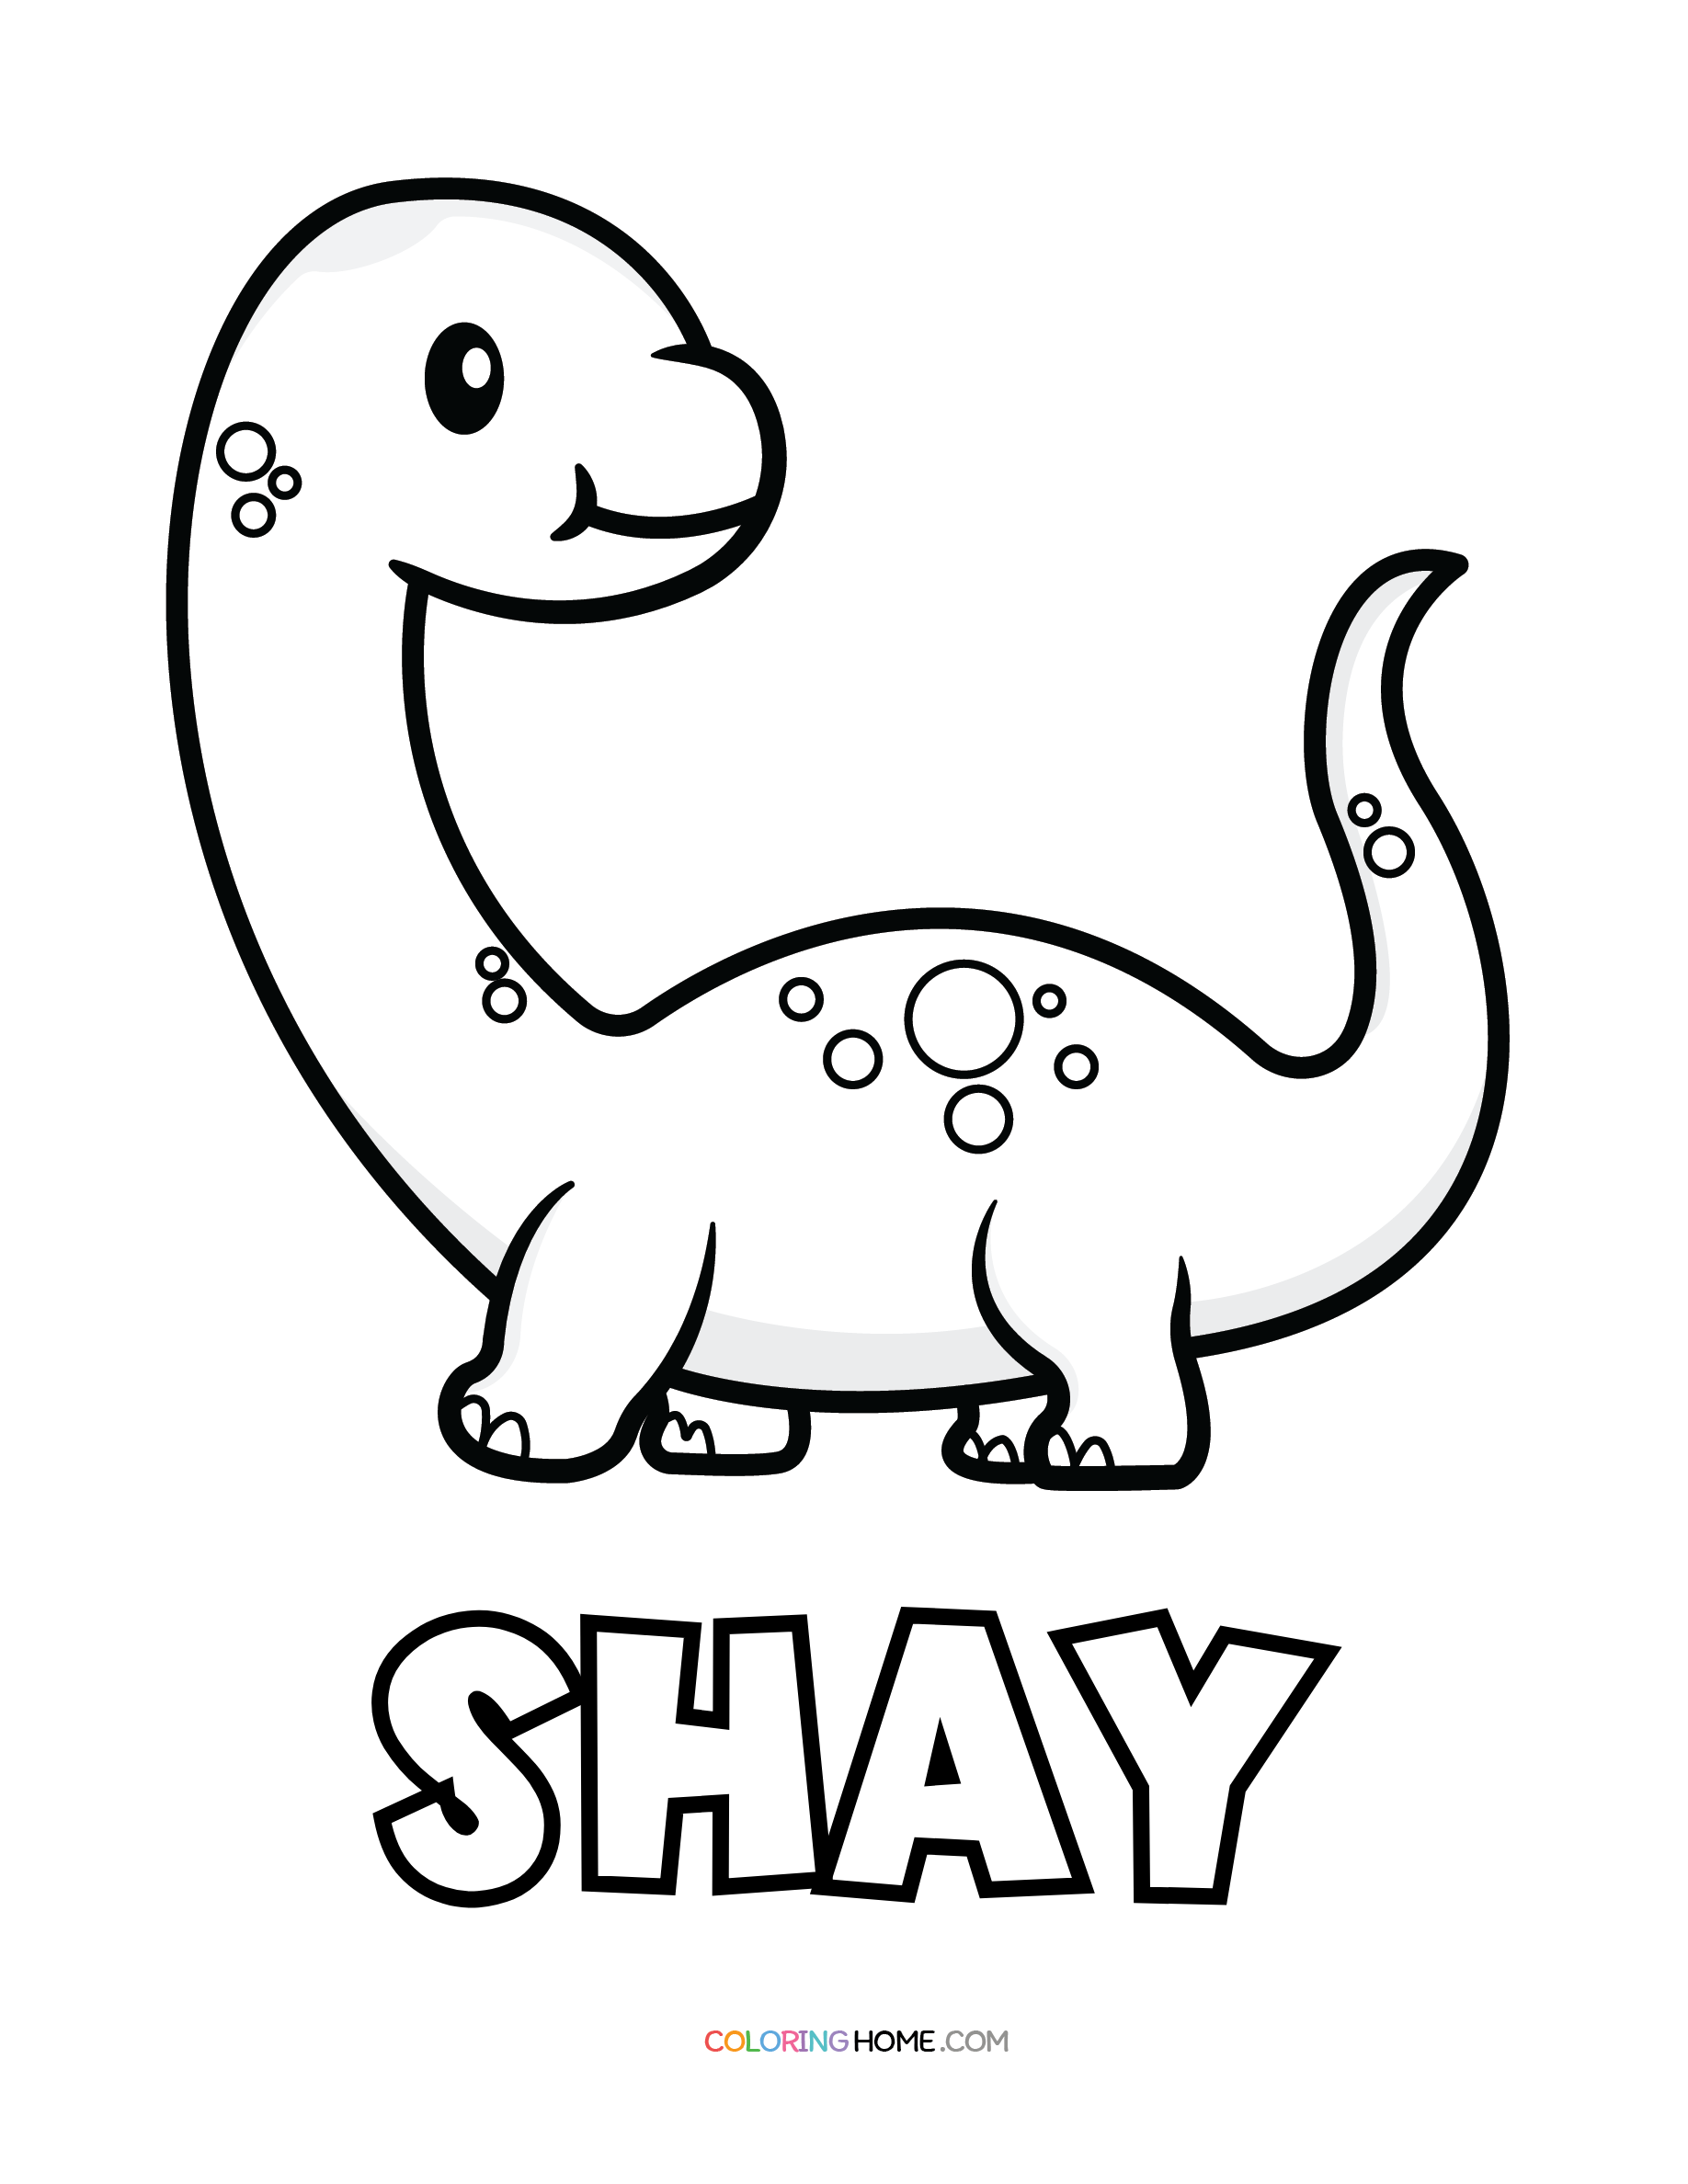 Shay dinosaur coloring page